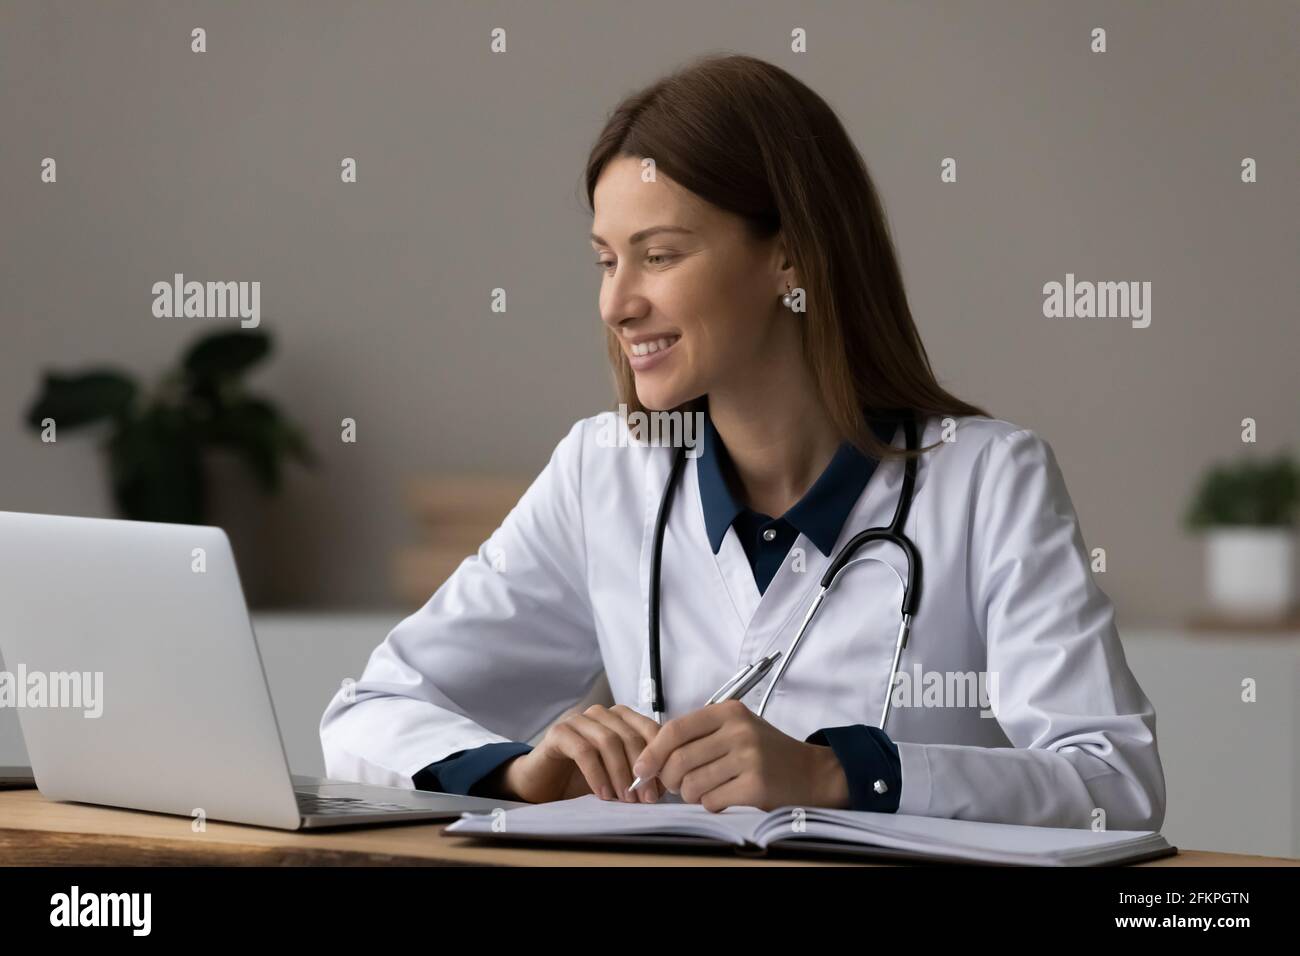 Femme souriante médecin travaille sur un ordinateur portable en ligne Banque D'Images